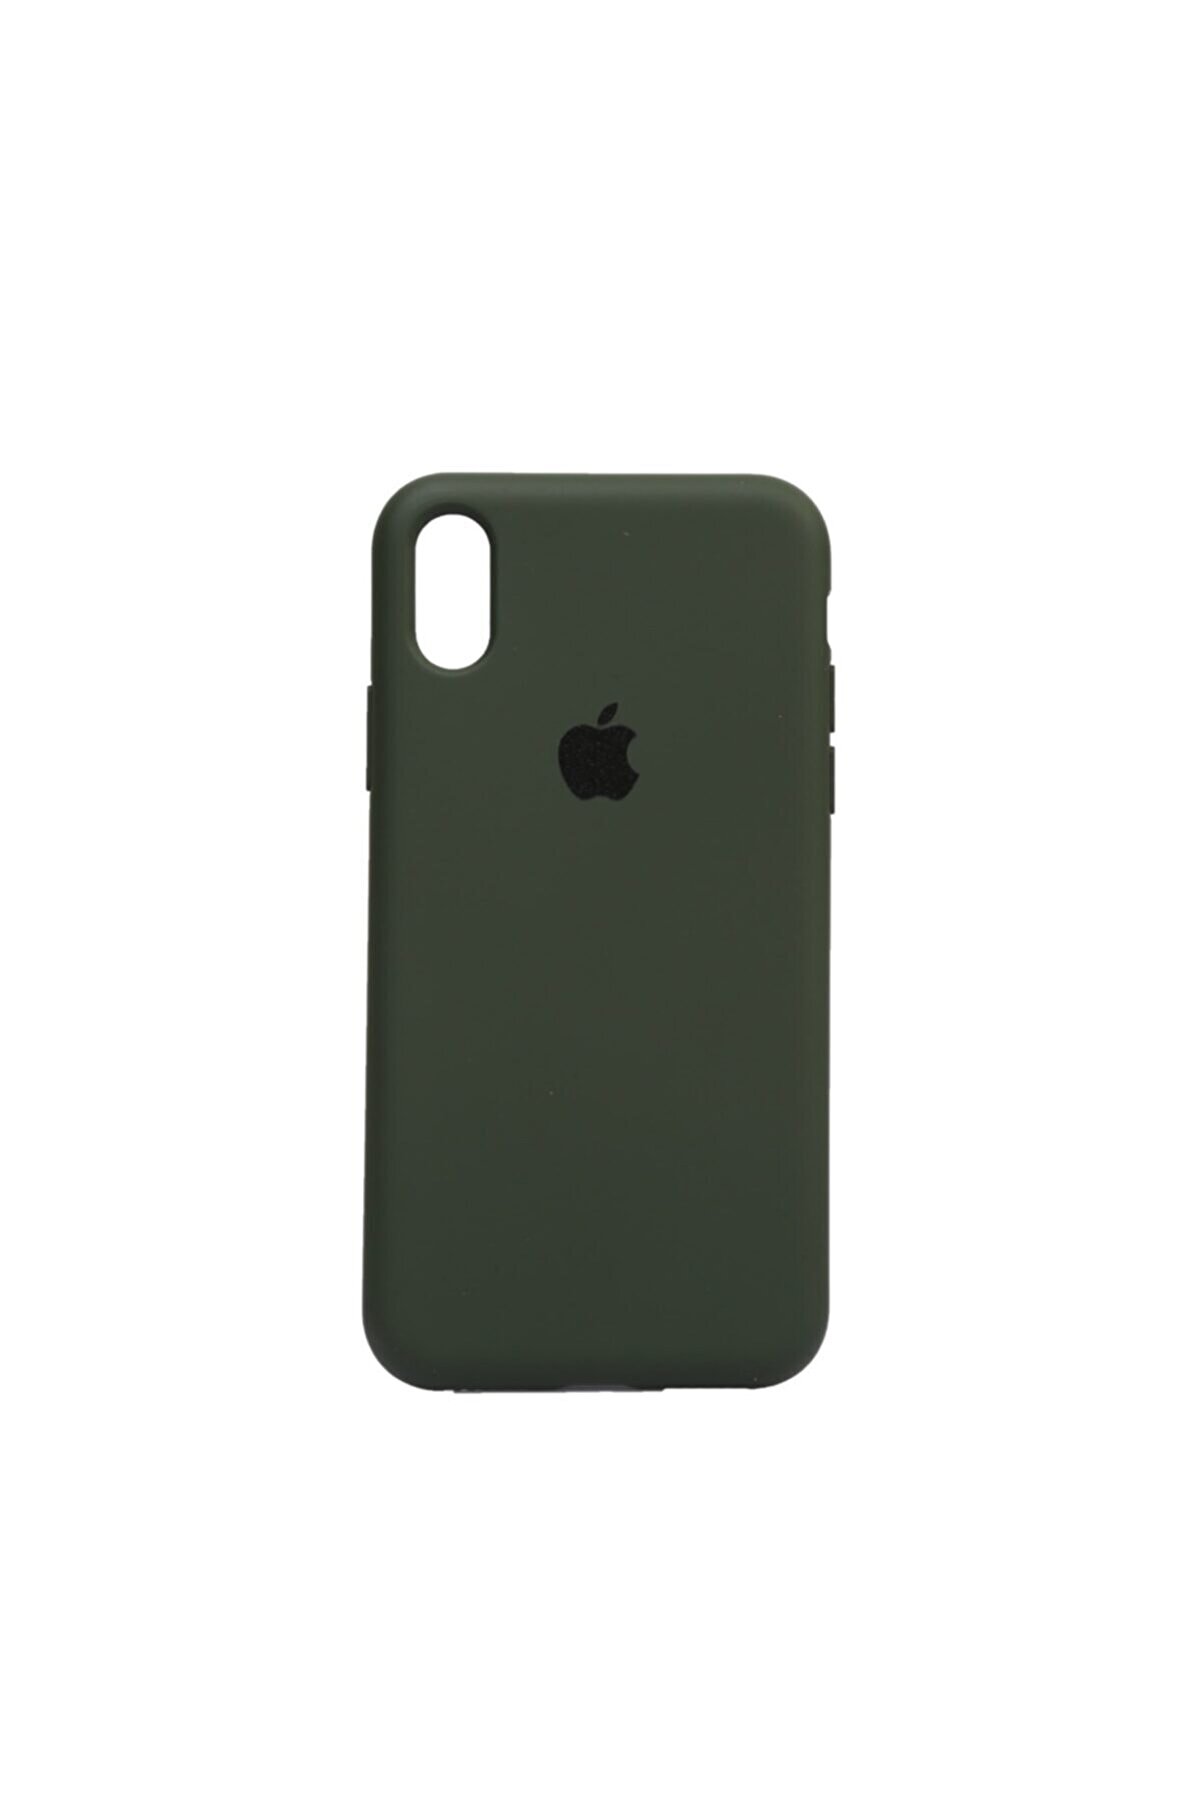 Merwish Apple Iphone Xr (6.1") Altı Kapalı Logolu Lansman Kılıf Haki